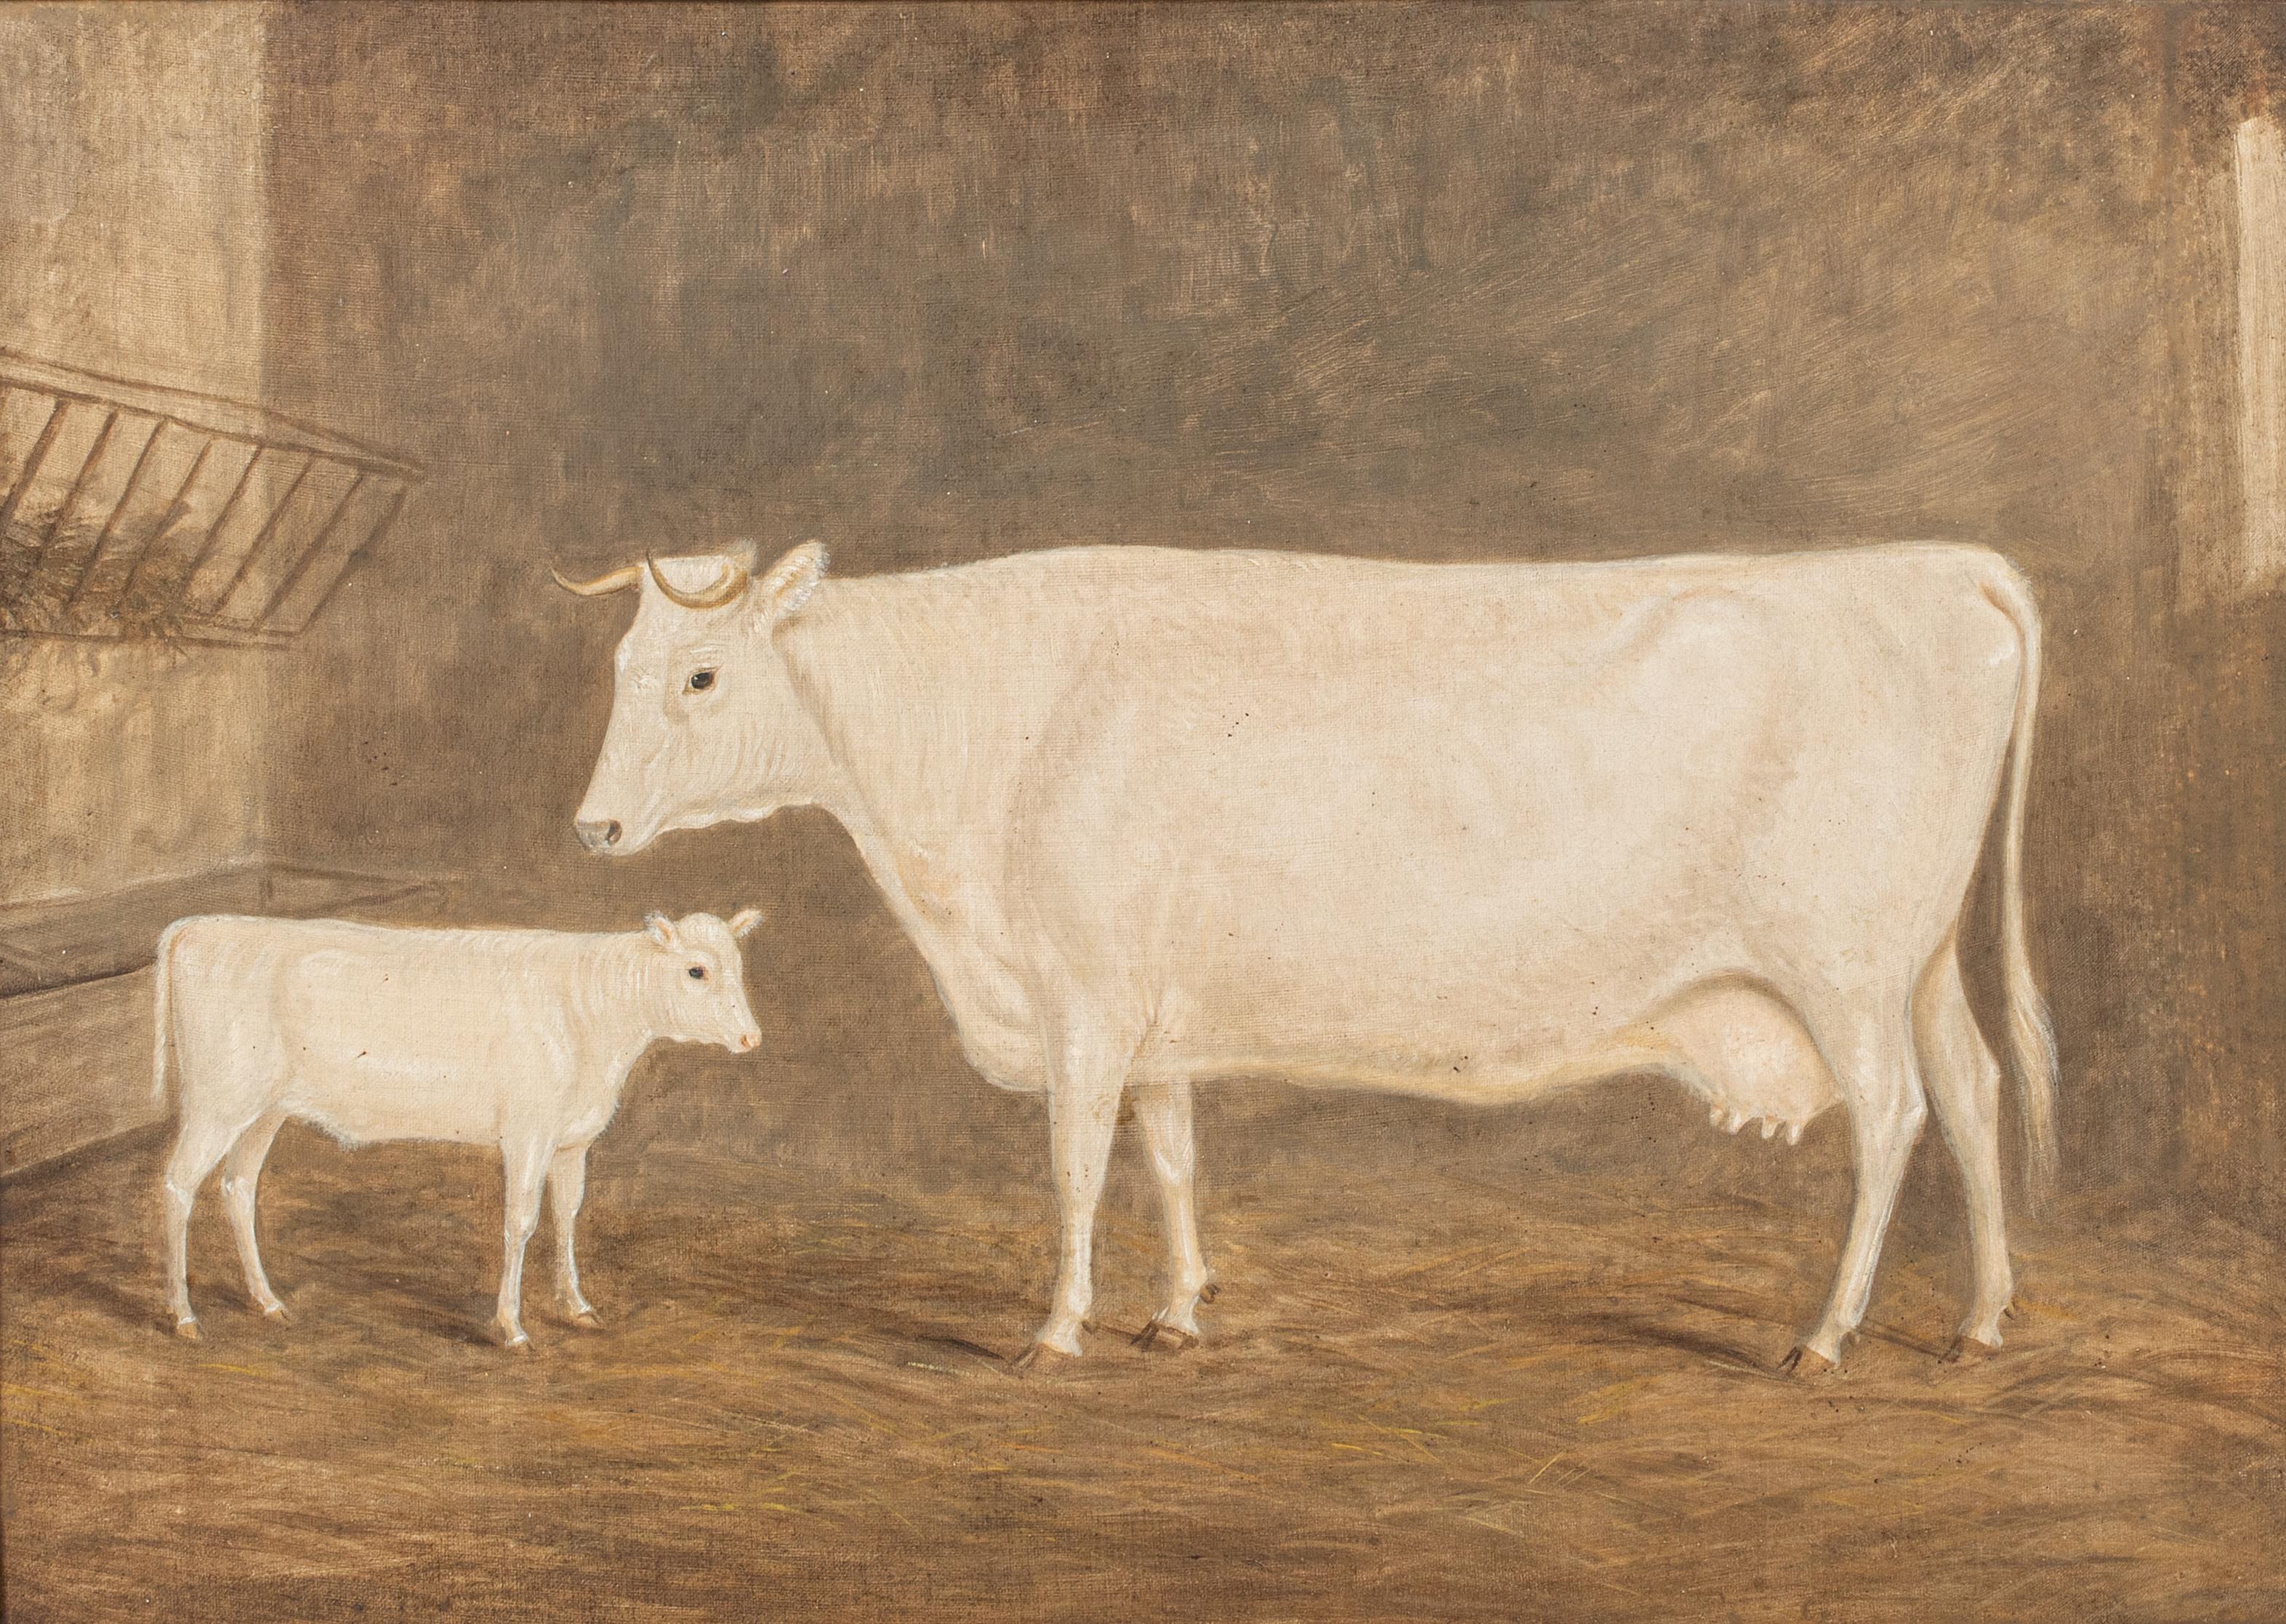 Portrait d'une vache et d'un veau de prix 19e siècle

attribué à William Henry Davis (1783-1865)

Grand portrait anglais du XIXe siècle d'une vache et d'un veau de prix dans une étable, huile sur toile attribuée à William Henry Davis. Excellente